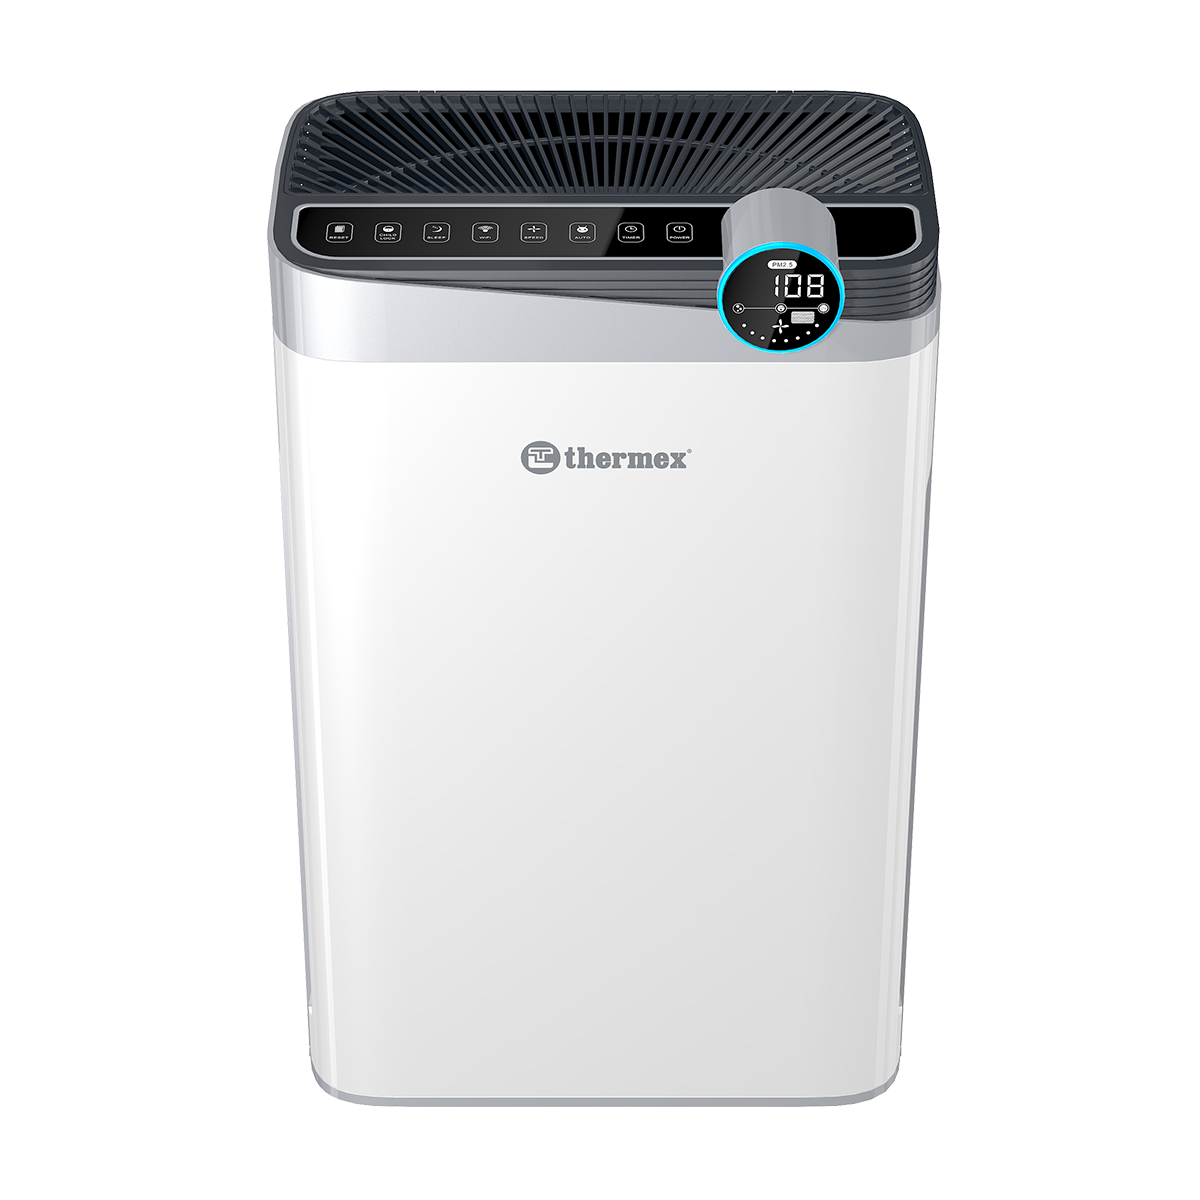 Воздухоочиститель THERMEX Griffon 500 Wi-Fi серый cедло pro griffon 142 мм полые рамки черно белое prsa0176